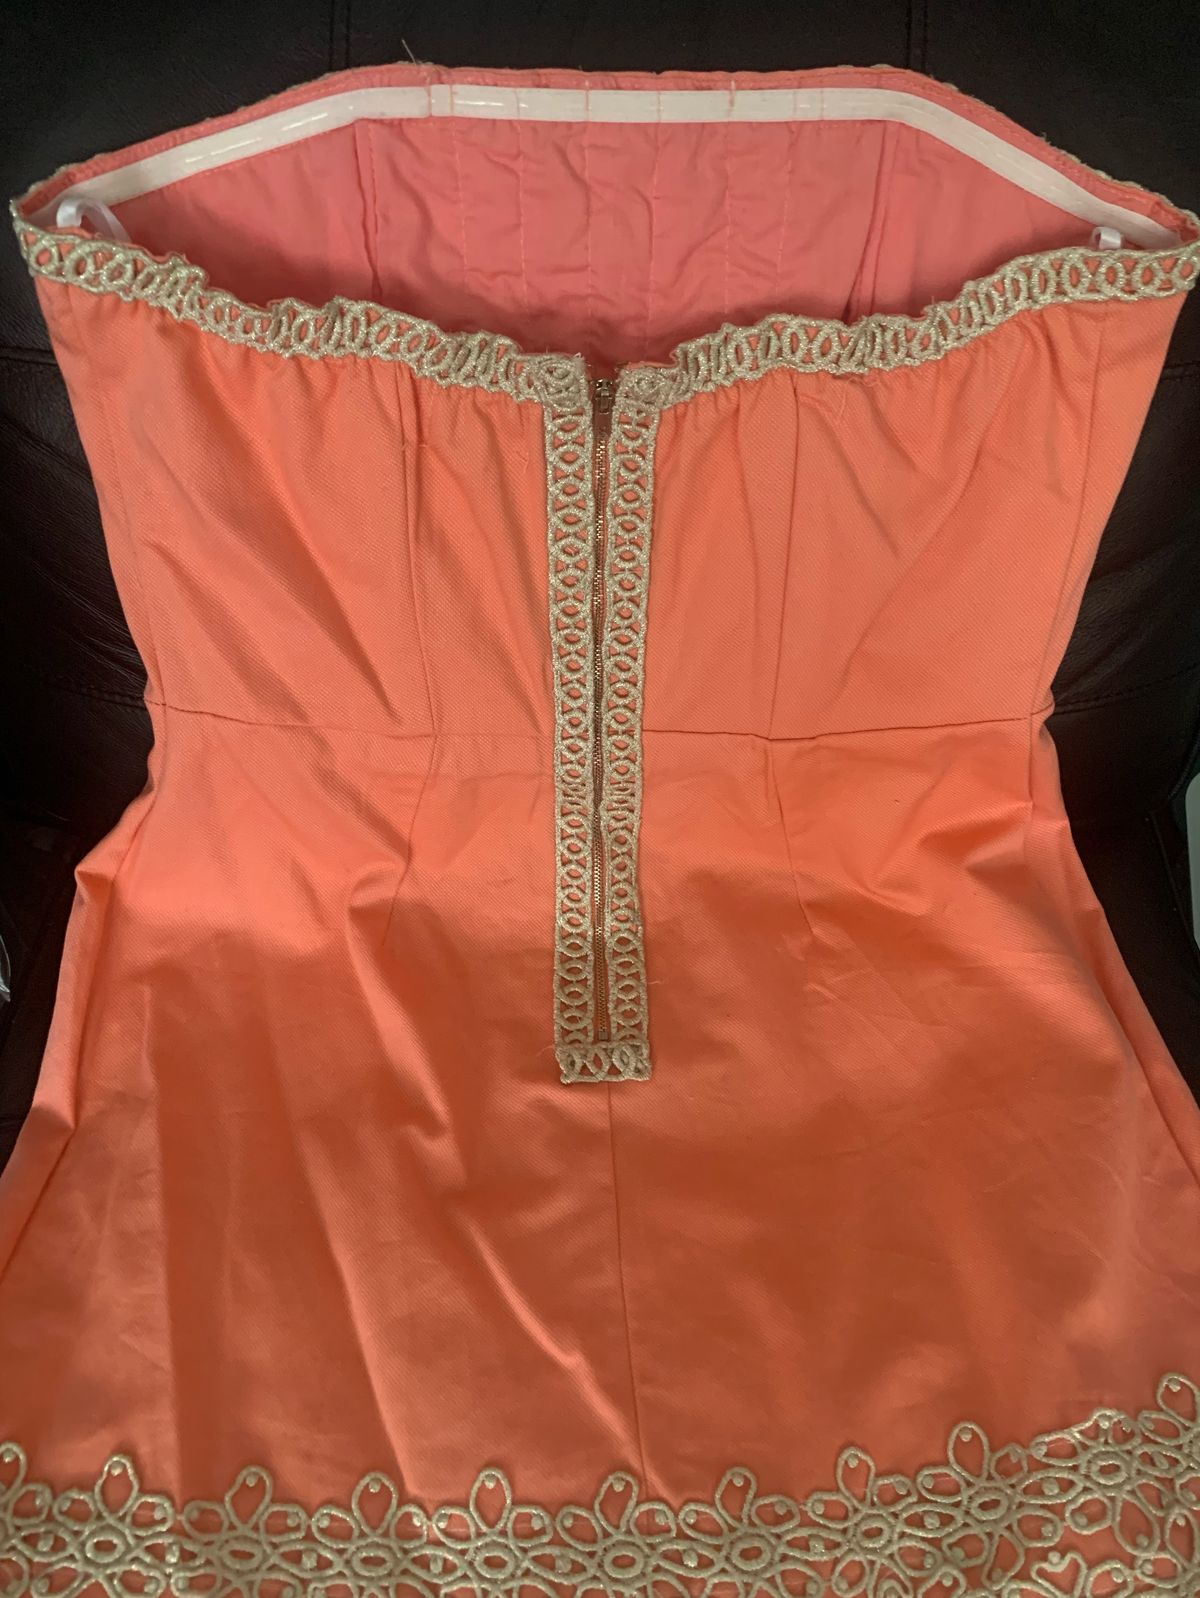 Mudpie Size 6 Strapless Orange Cocktail Dress on Queenly